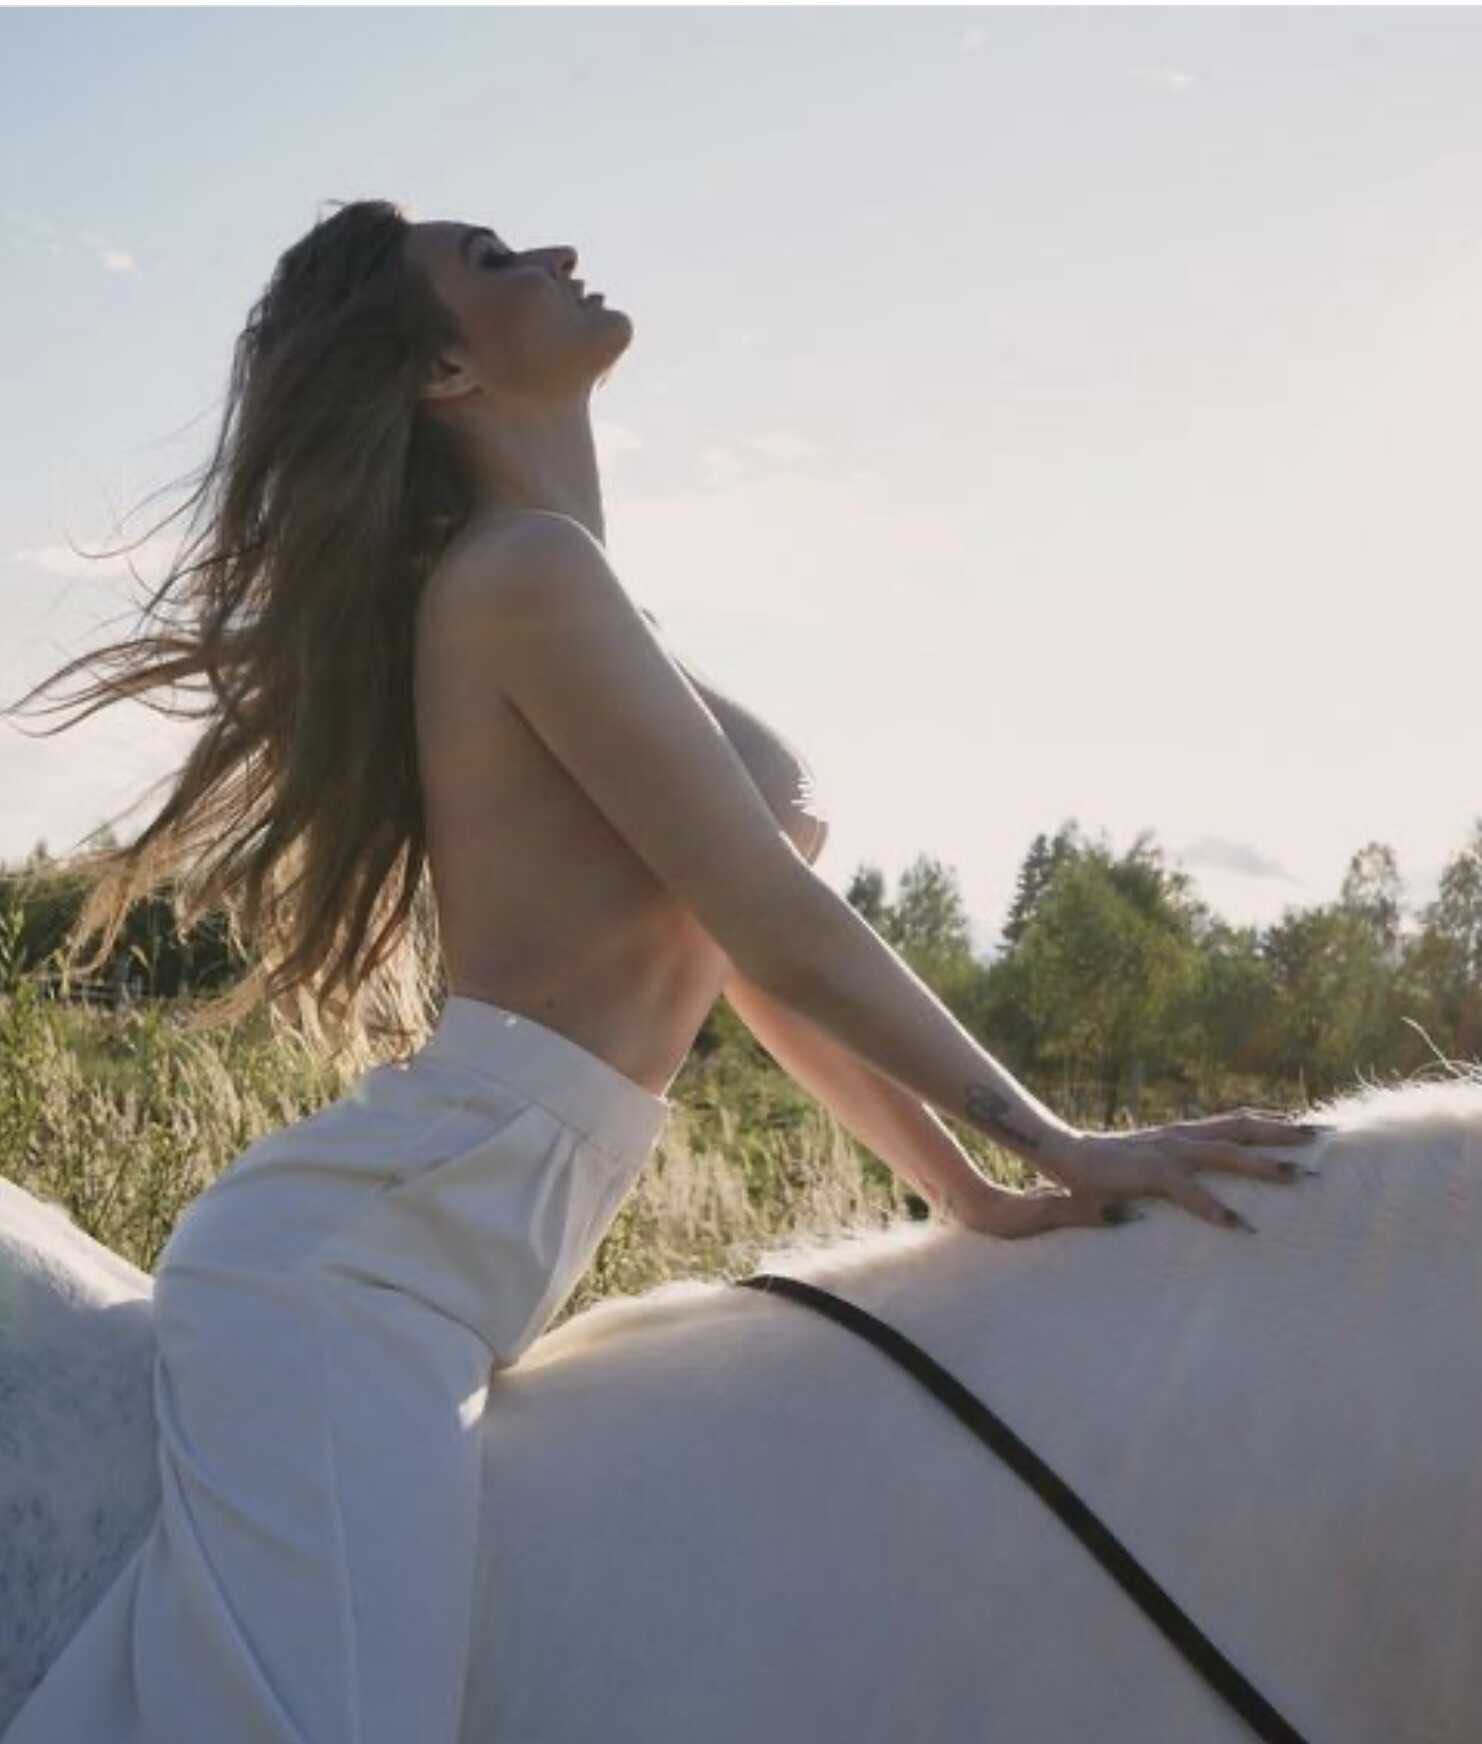 Алена Водонаева, полностью обнажив грудь, ездила по лесу на лошади, преследуя тайный умысел